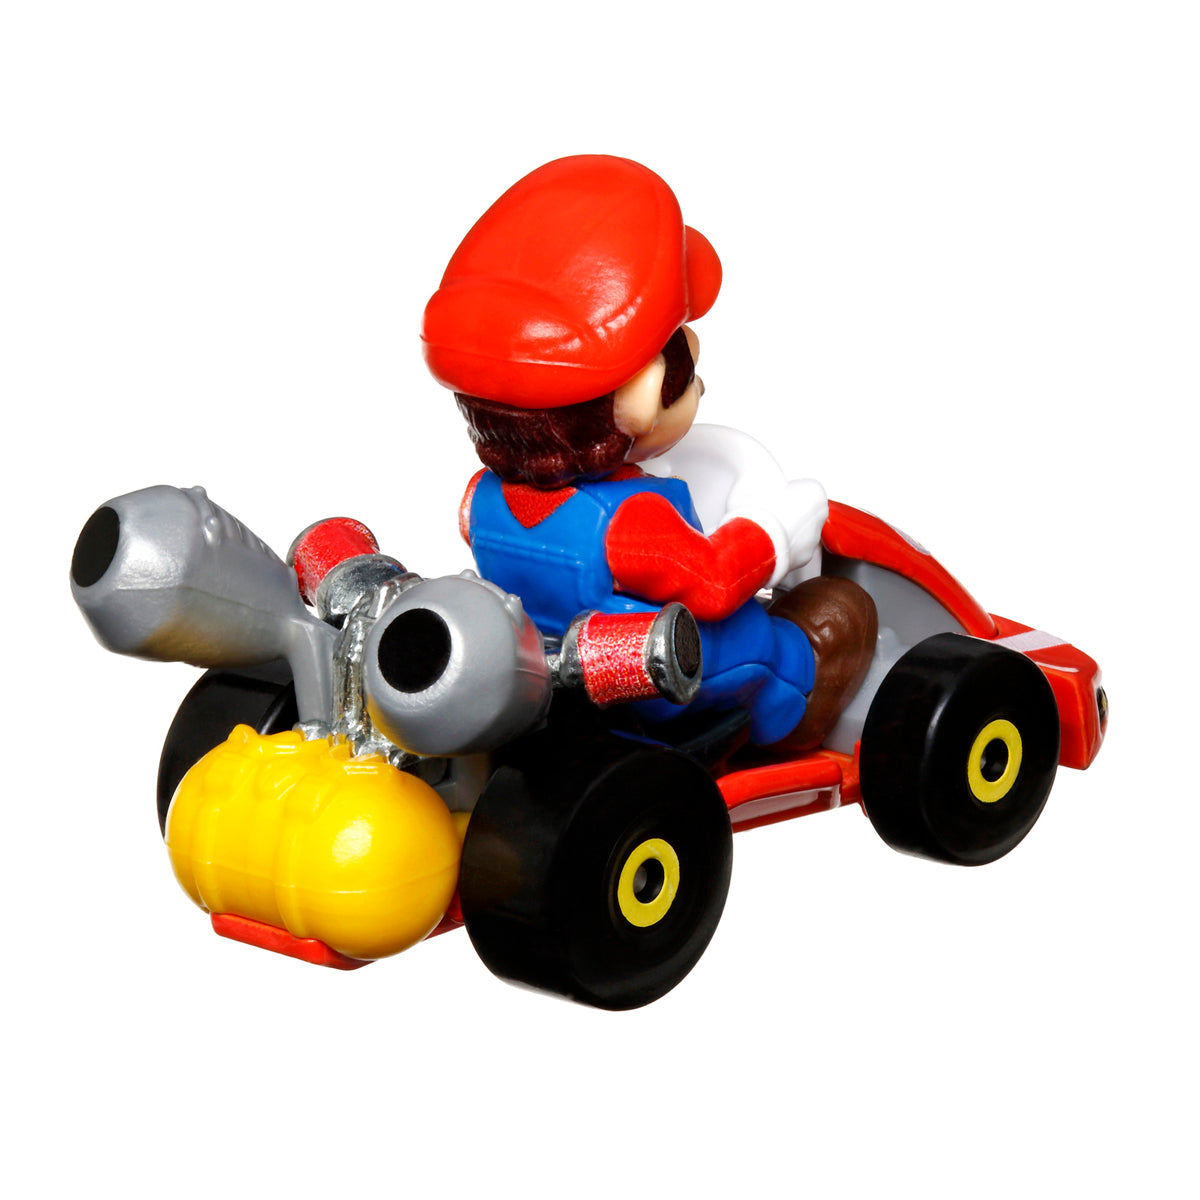 Super Mario Bros. Movie Hot Wheels - Mario